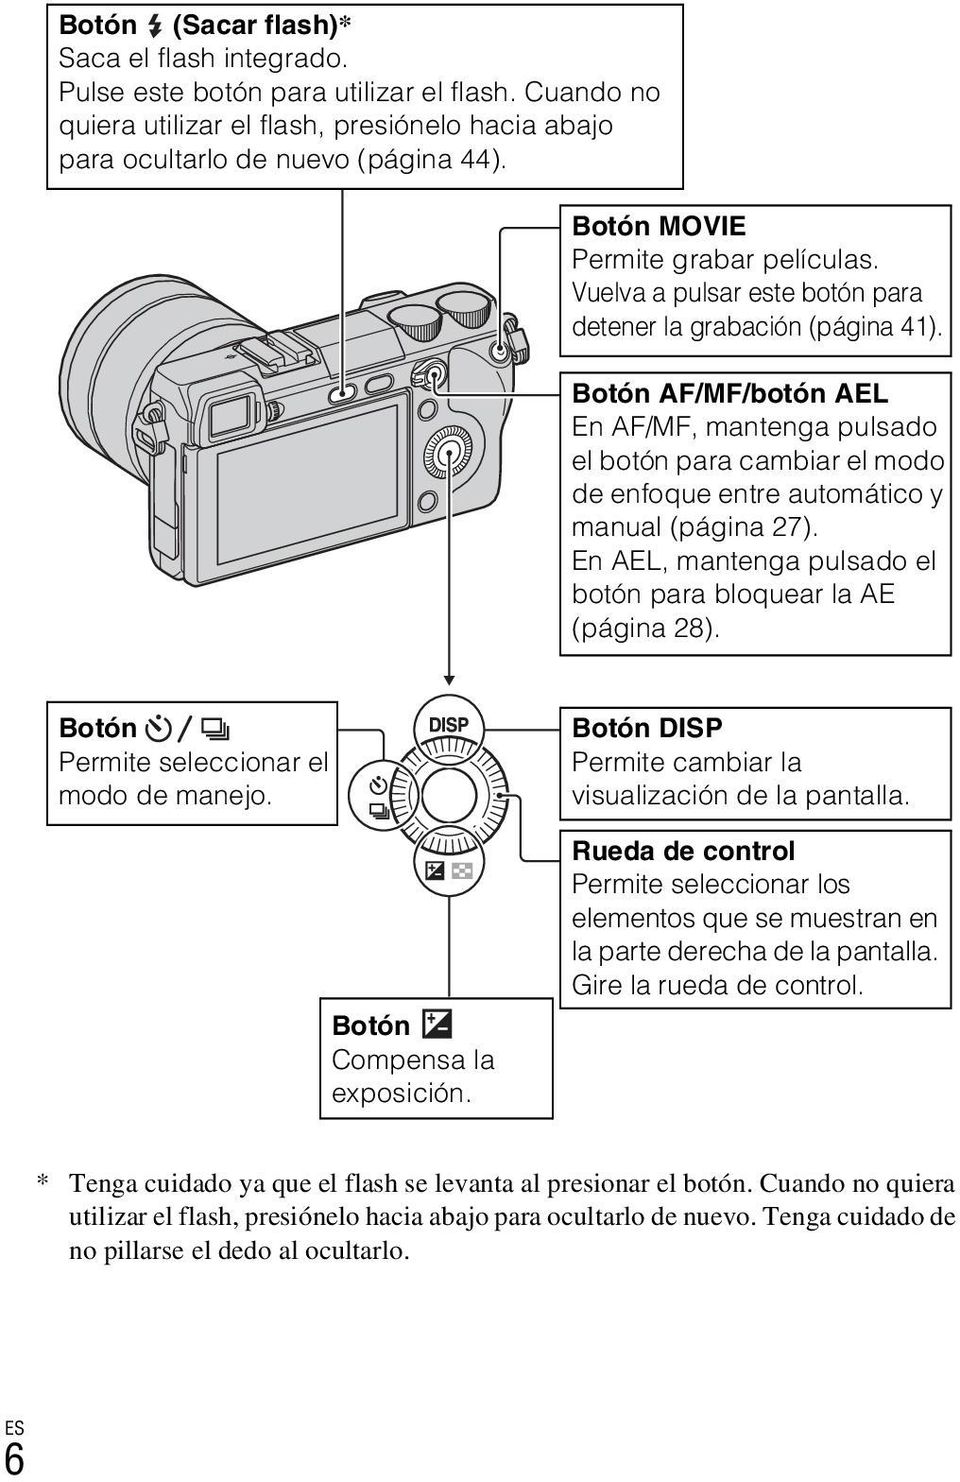 Botón AF/MF/botón AEL En AF/MF, mantenga pulsado el botón para cambiar el modo de enfoque entre automático y manual (página 27). En AEL, mantenga pulsado el botón para bloquear la AE (página 28).